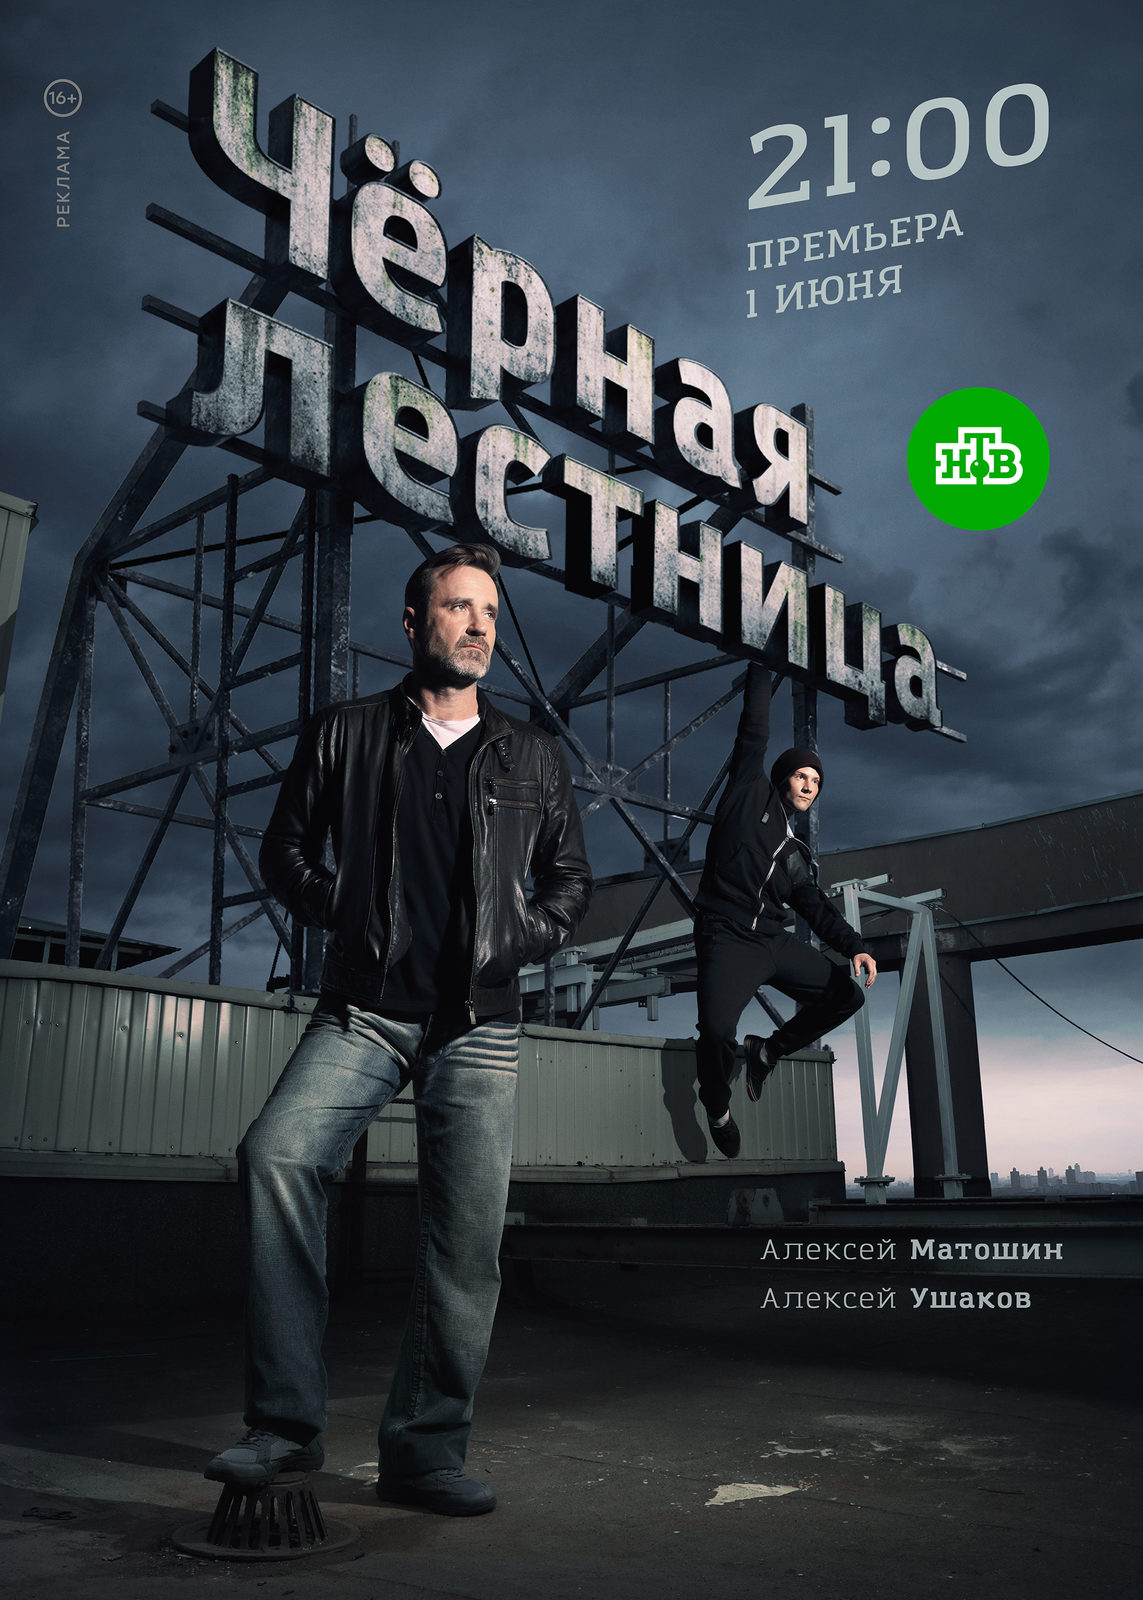 Премьера «Черной лестницы» с Алексеем Матошиным состоится 1 июня